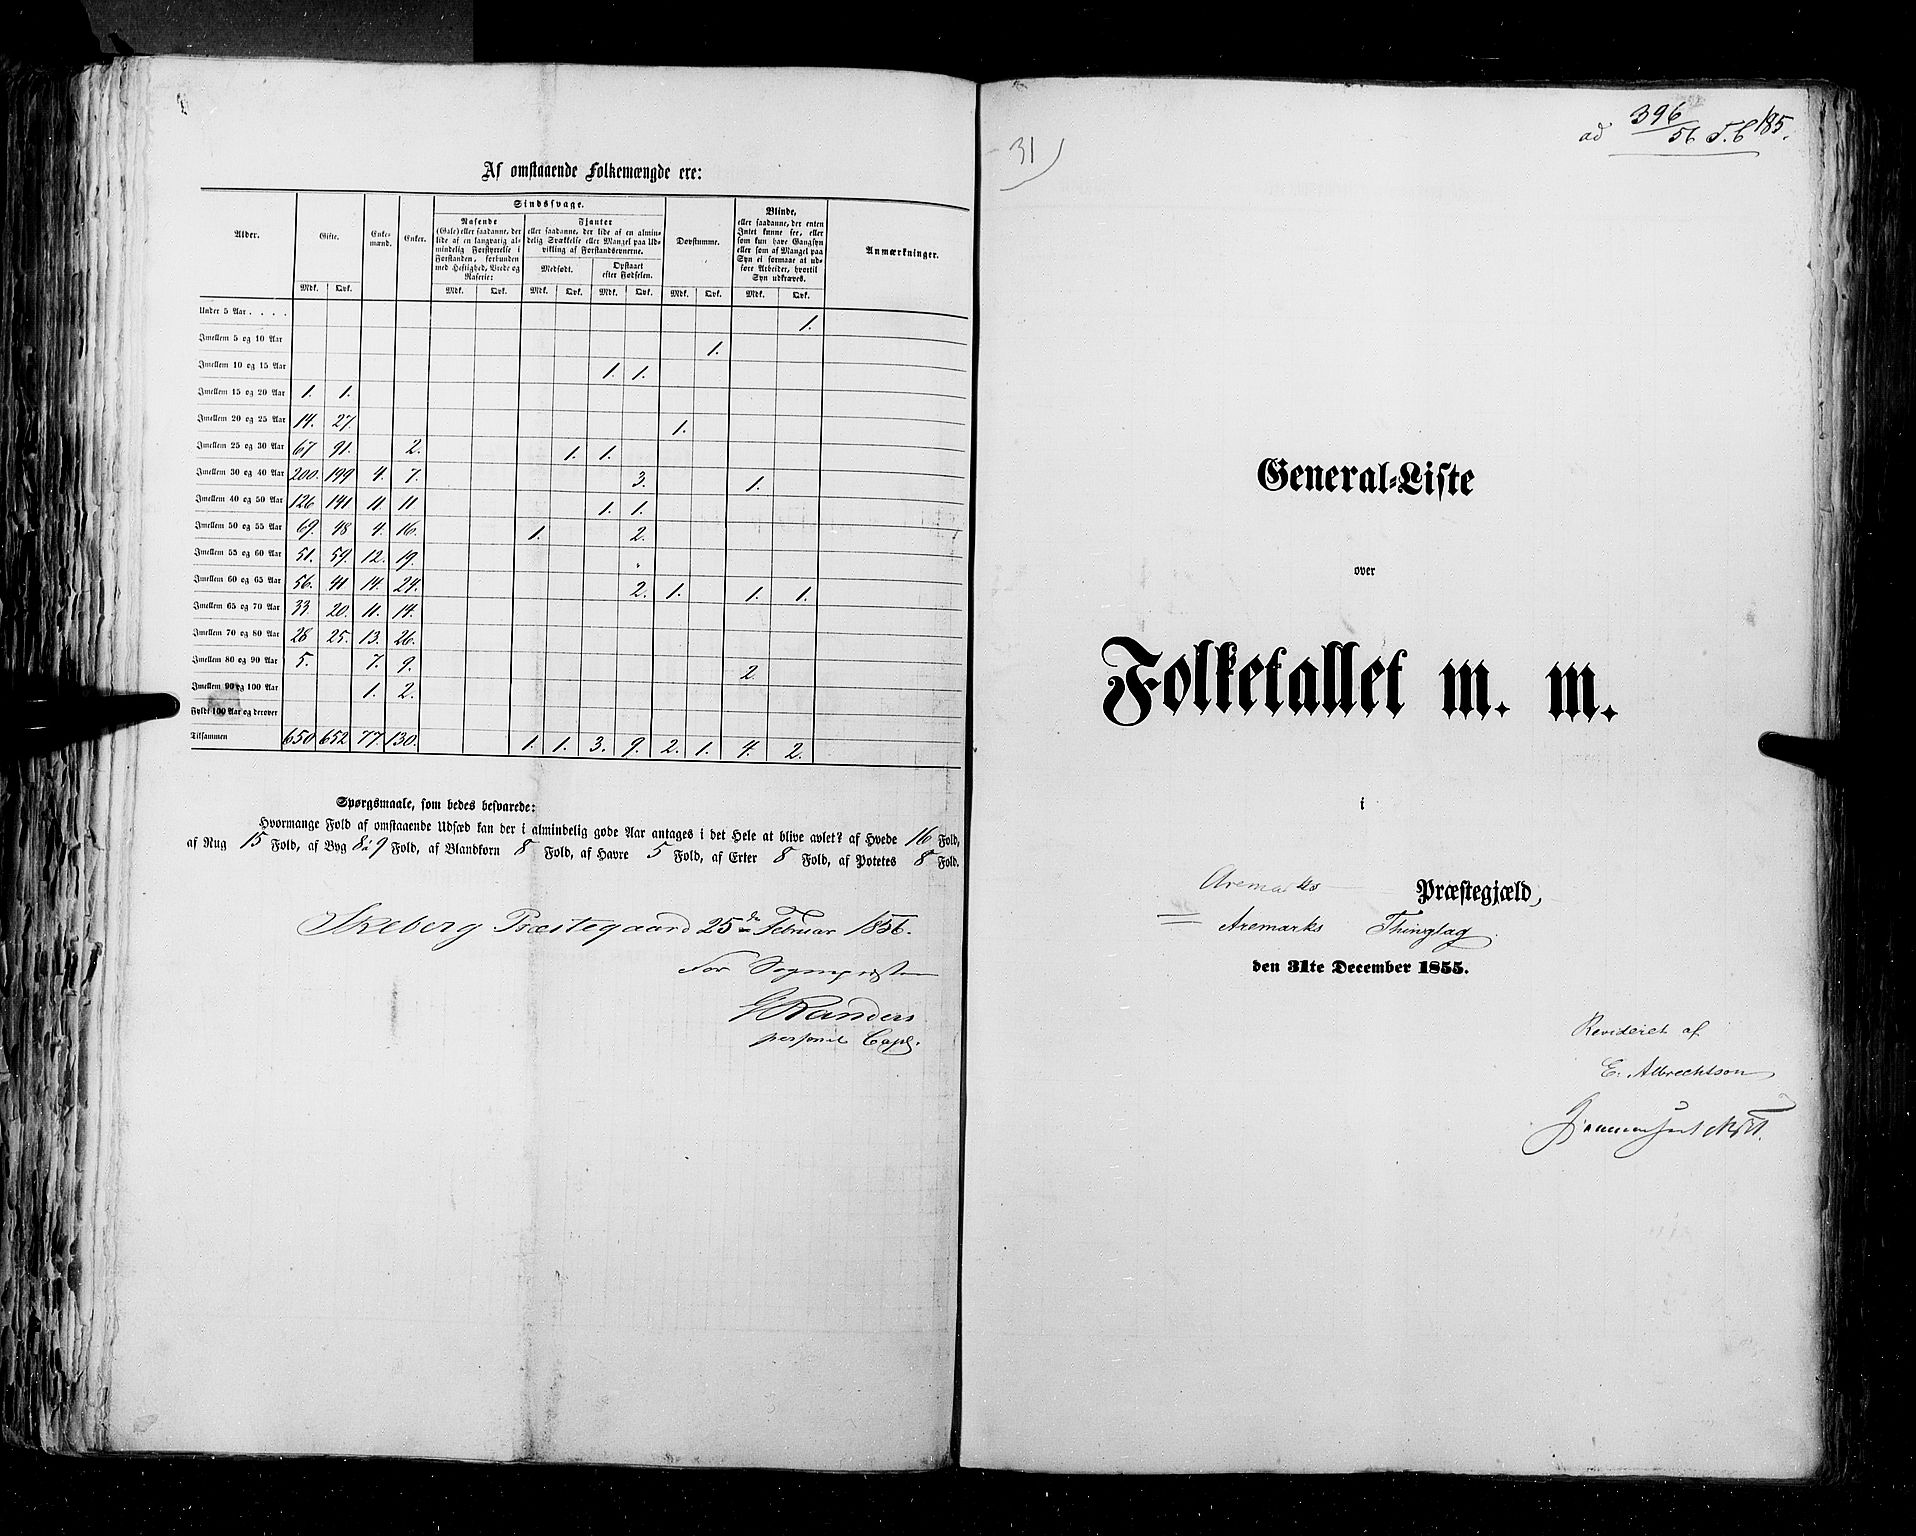 RA, Folketellingen 1855, bind 1: Akershus amt, Smålenenes amt og Hedemarken amt, 1855, s. 185